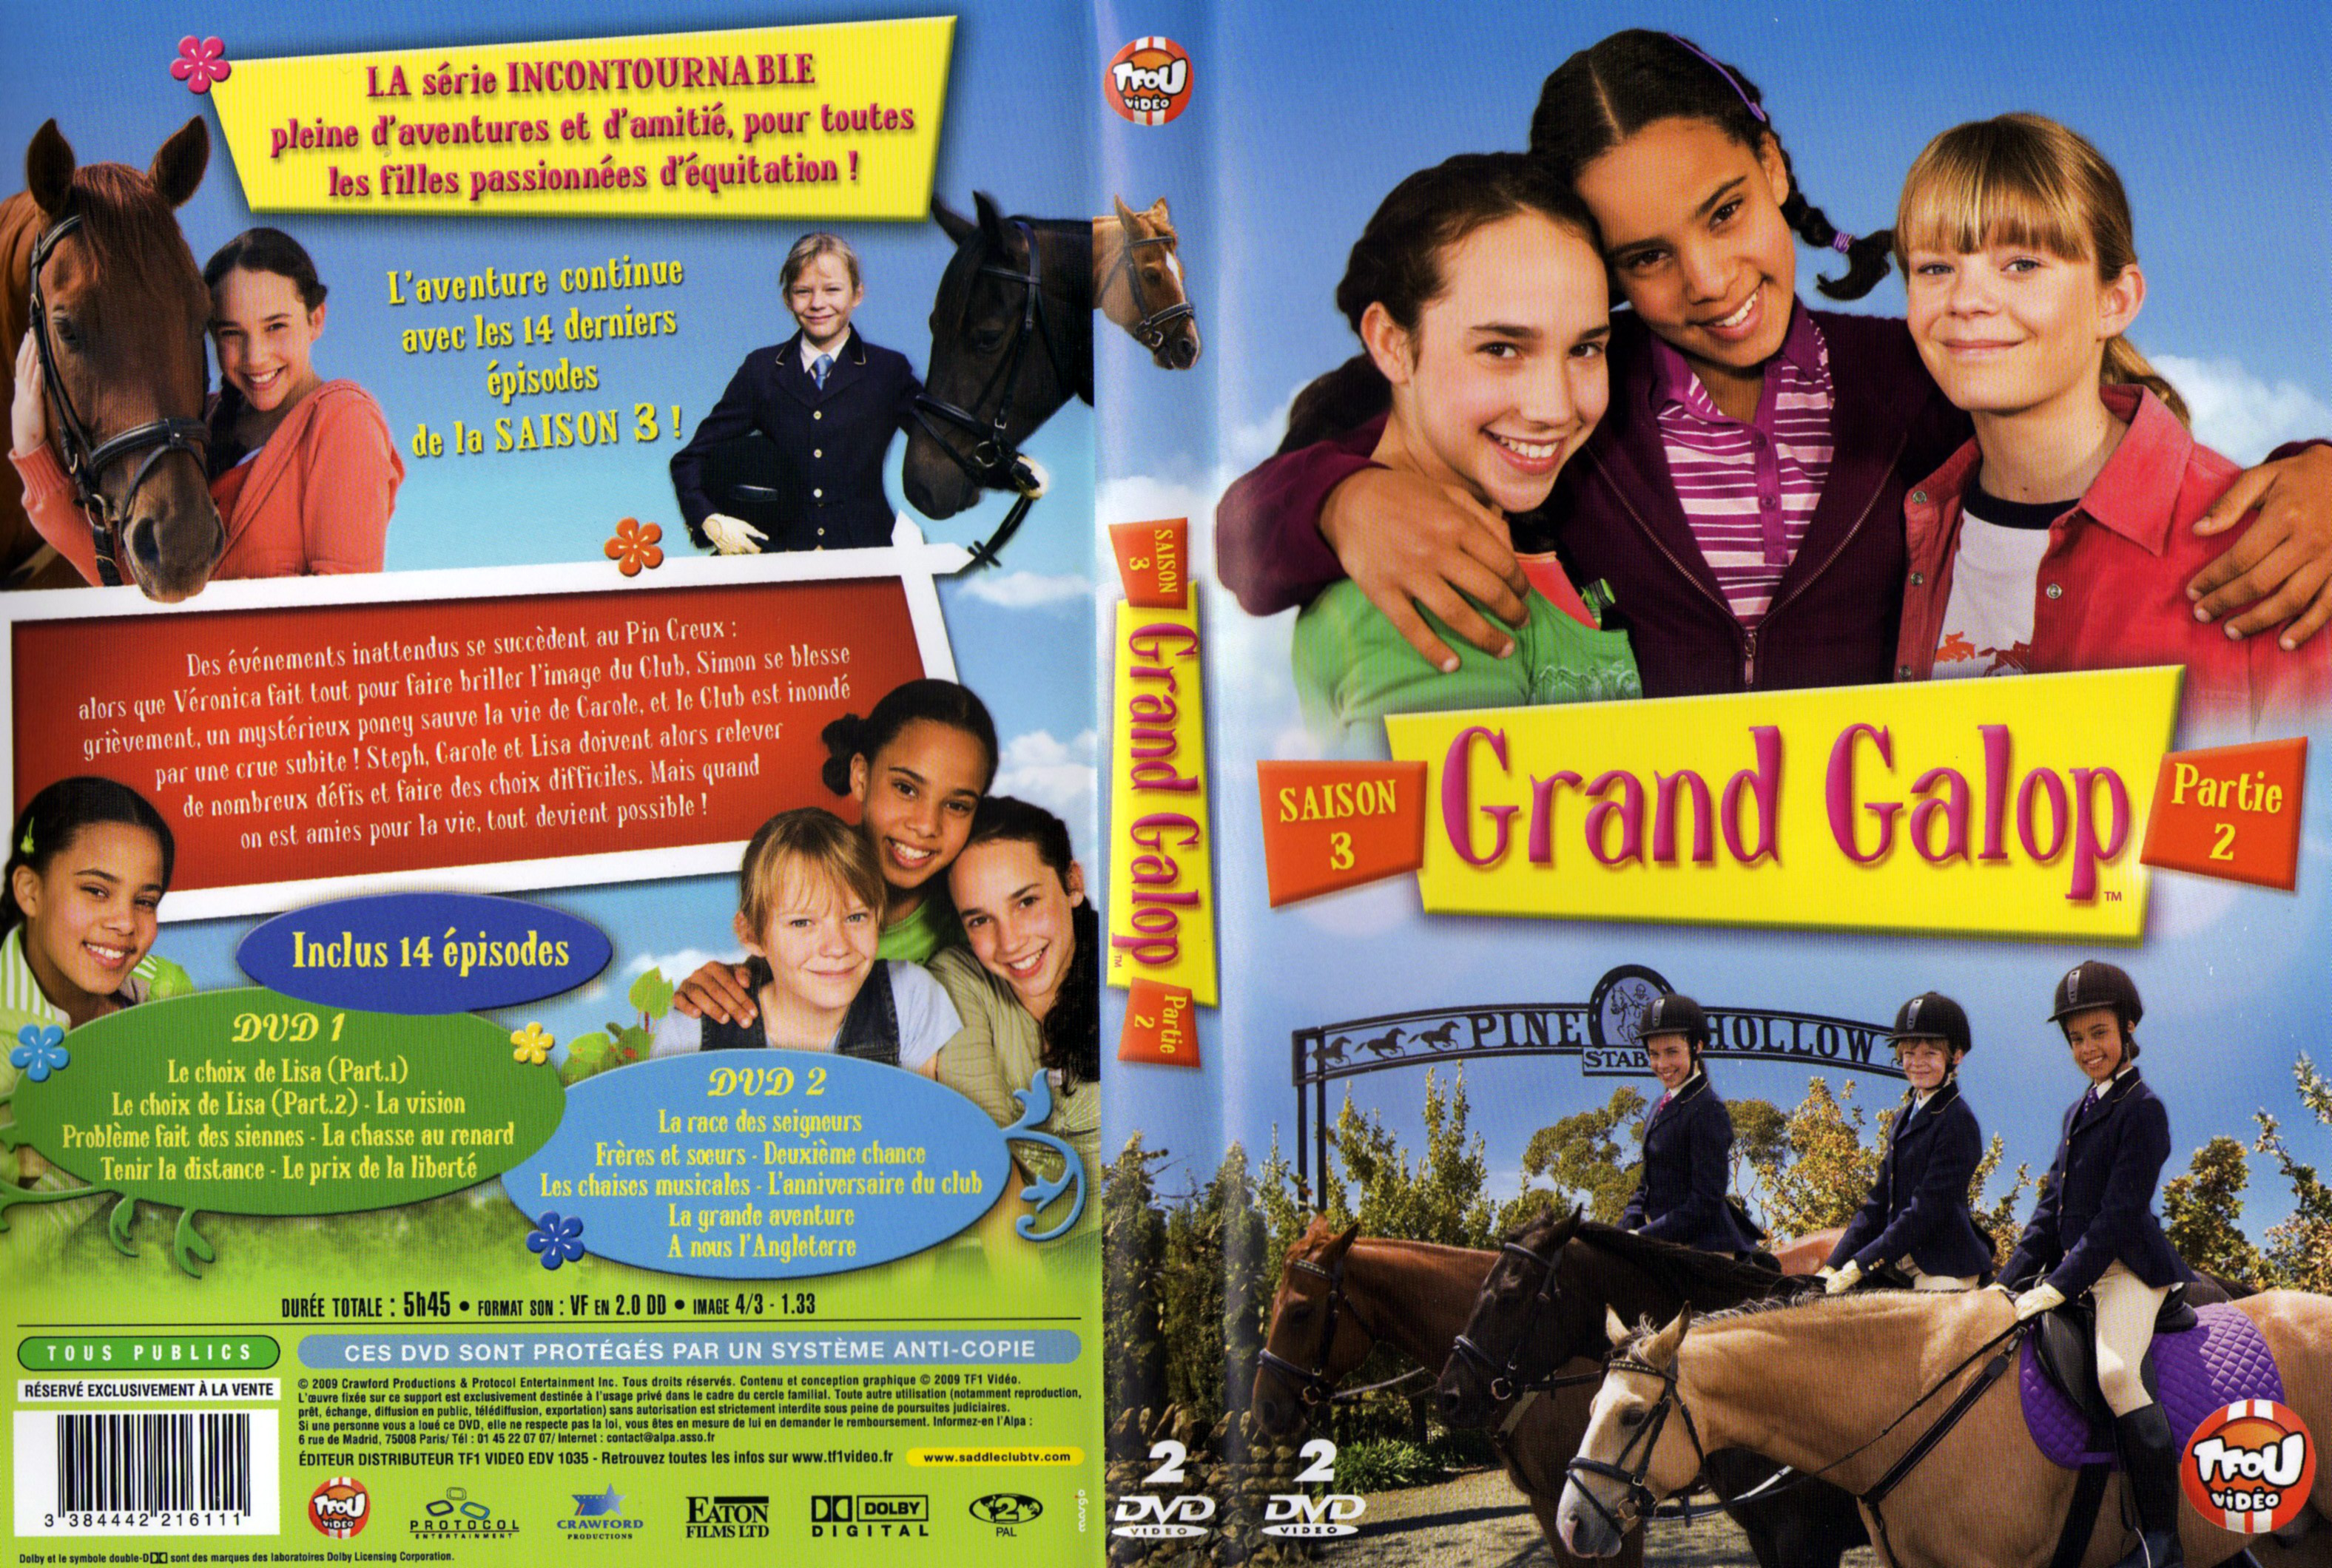 Jaquette DVD Grand galop Saison 3 Partie 2